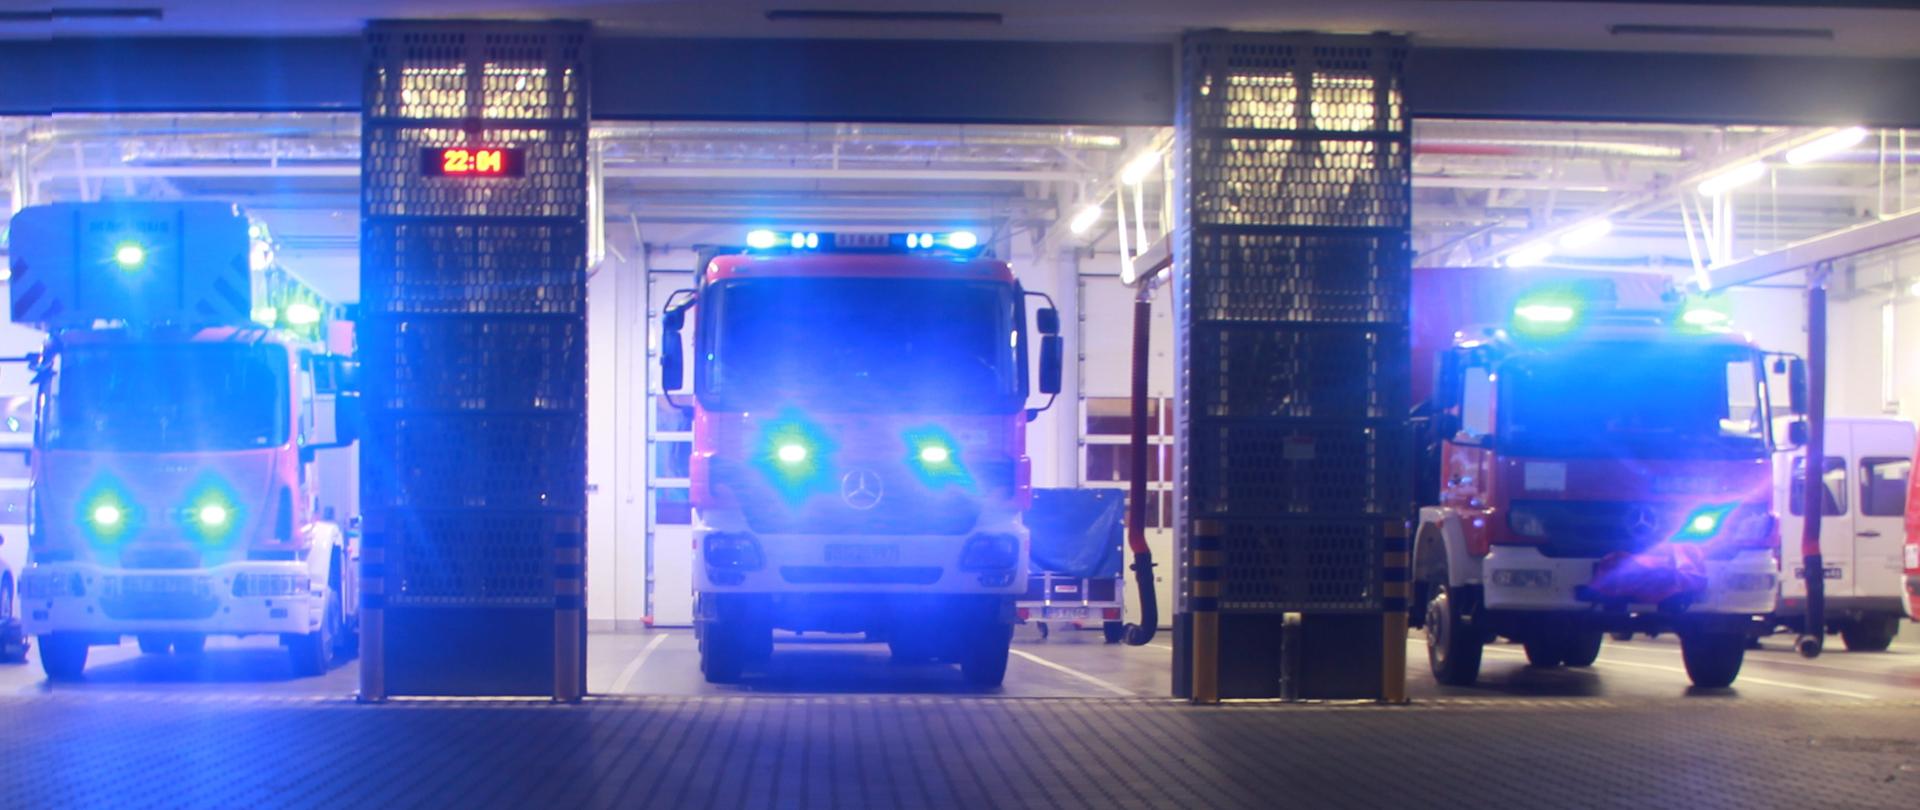 Samochody strażackie w garażu z włączonymi sygnałami świetlnymi